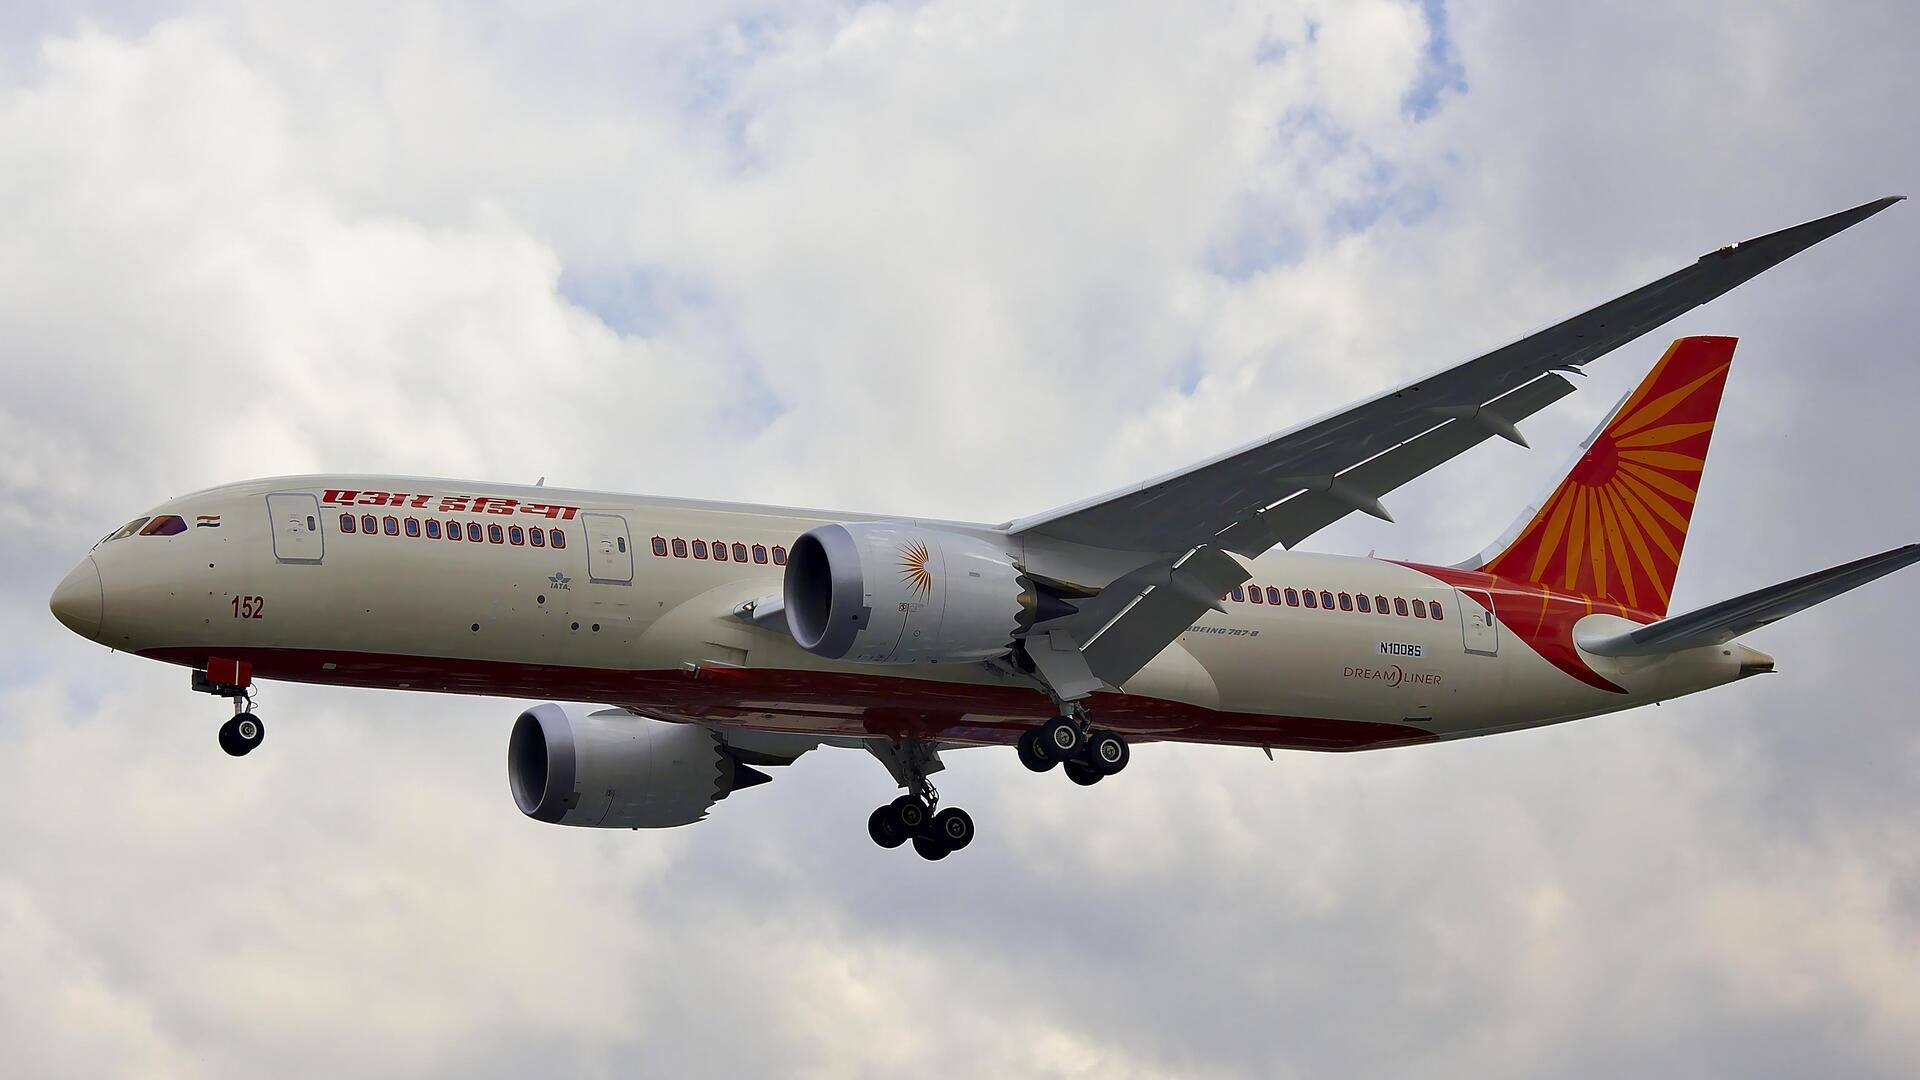 एयर इंडिया के पायलट ने फ्लाइट में महिला मित्र को कॉकपिट में बुलाया, जांच के आदेश